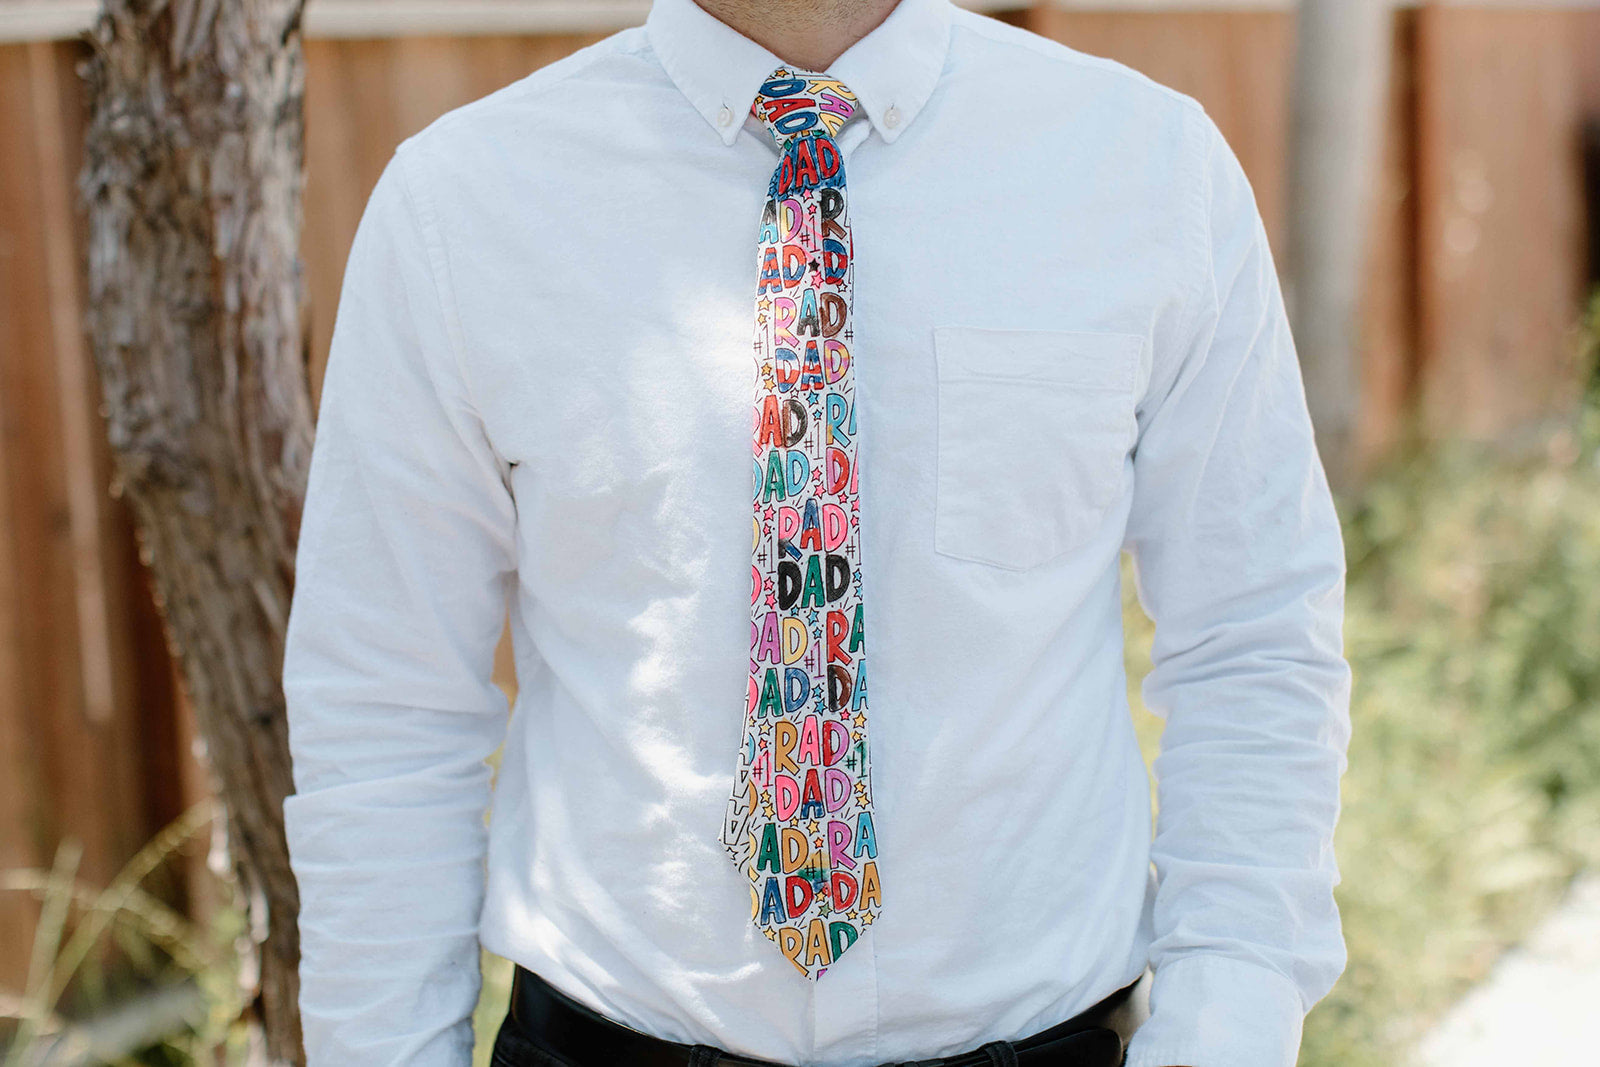 Rad & Happy Father's Day Tie - Rad Dad or Rad Grand Dad - Blank Men's Tie + Marker Set